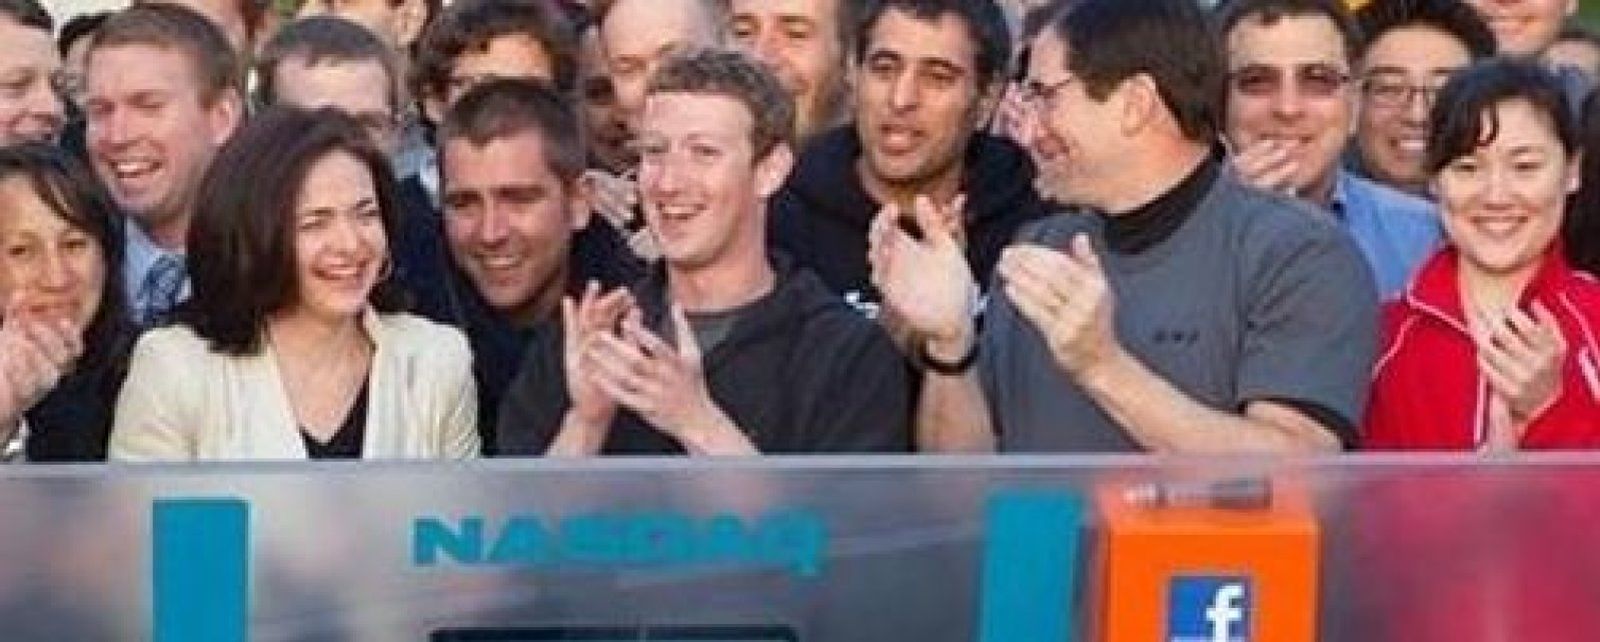 Foto: La sudadera de Zuckerberg enloquece a la Red